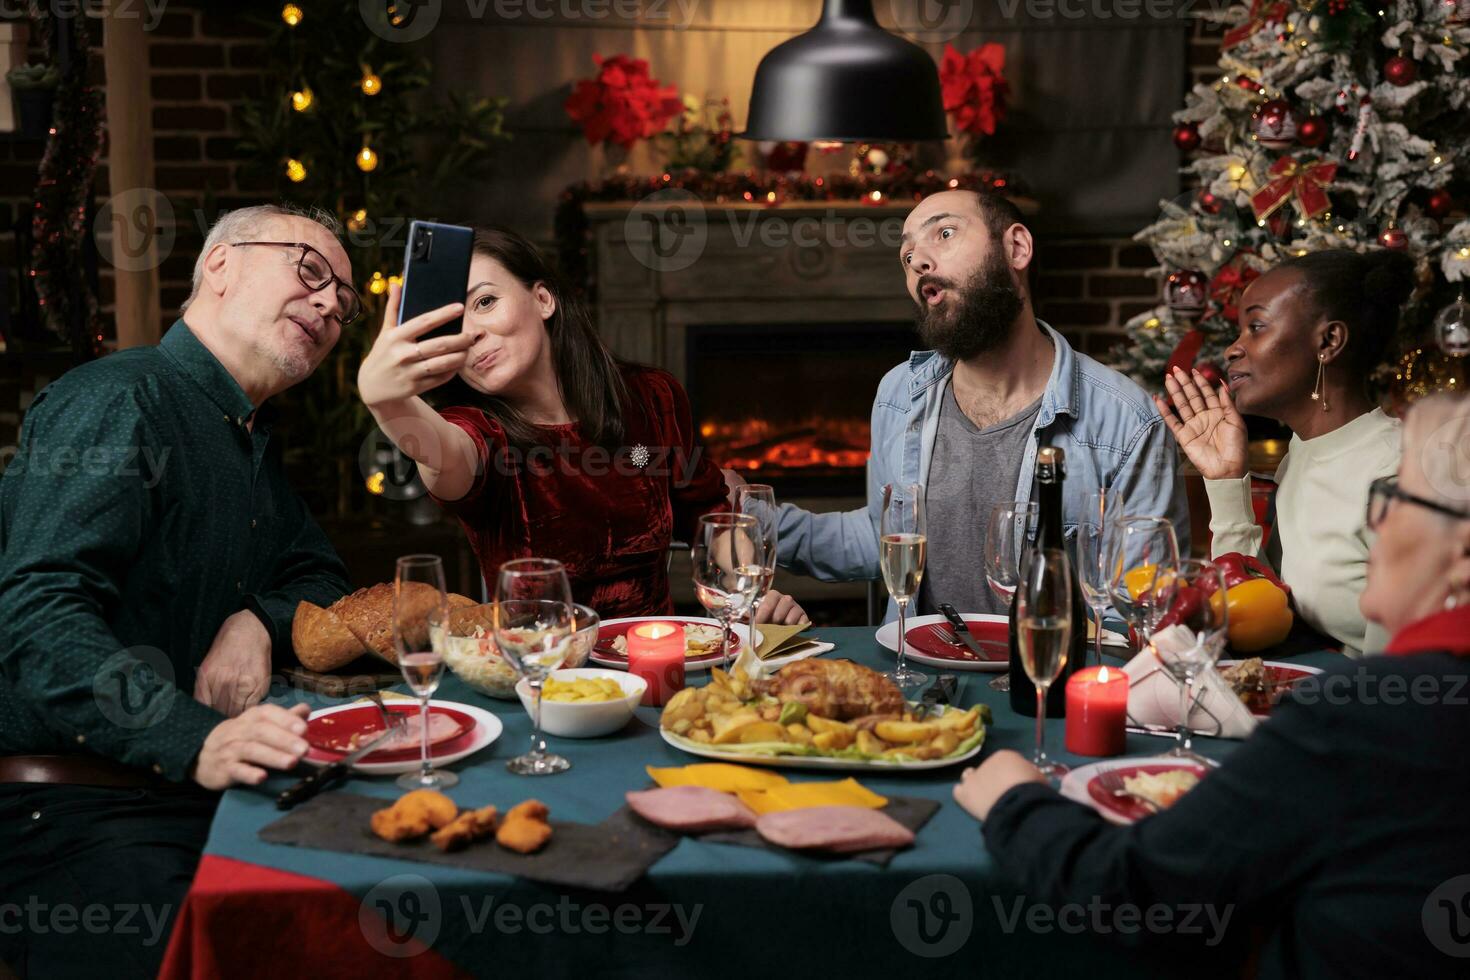 gens prise des photos à de fête dîner avec fait maison nourriture et des lunettes de vin, fabrication souvenirs pendant Noël veille hiver vacances. diverse les personnes ayant amusement avec Photos sur téléphone à maison.